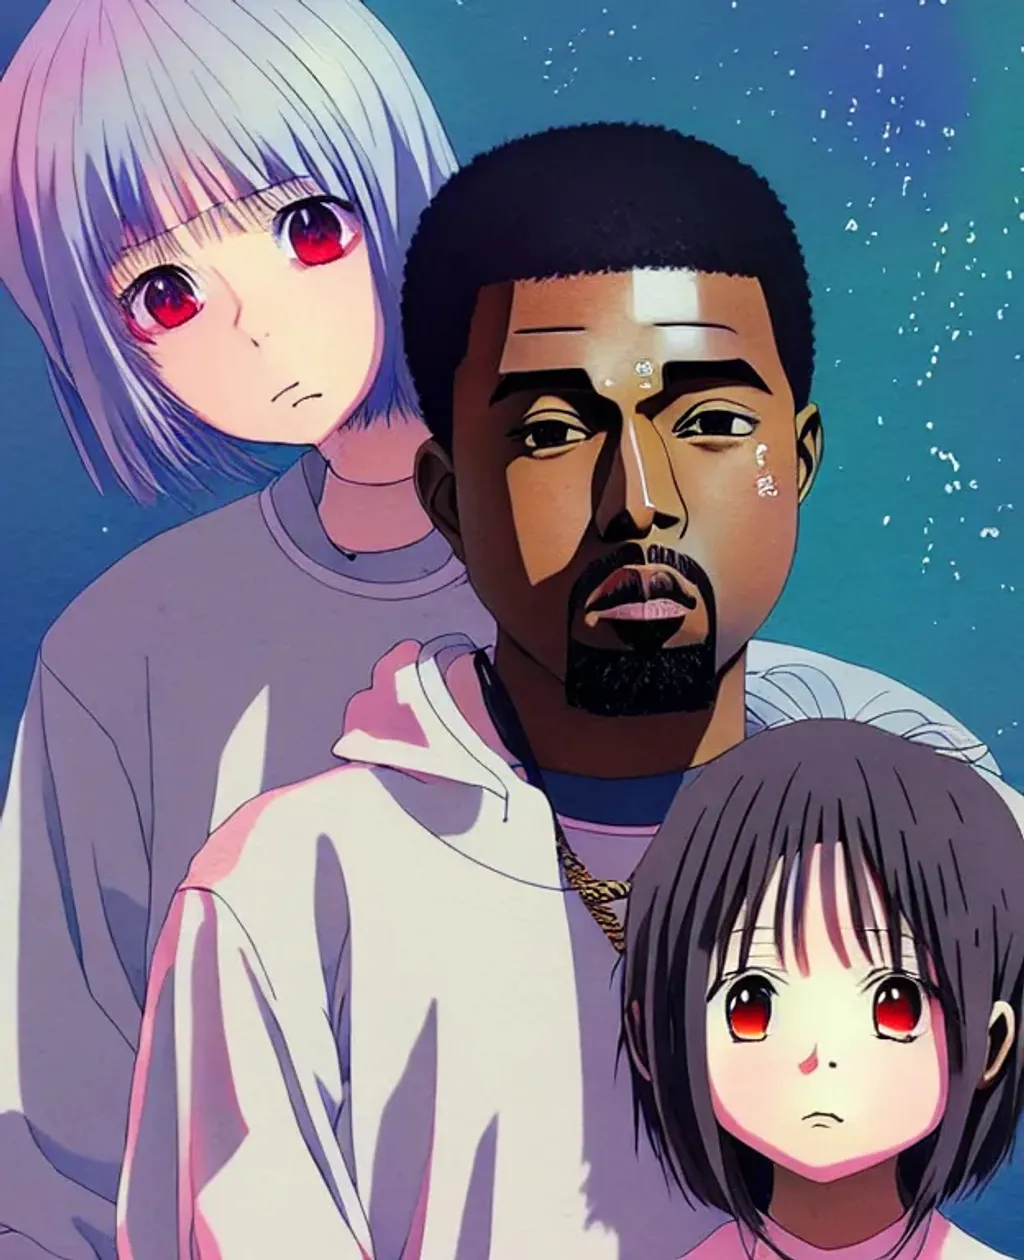 Anime-style Kanye West - Drawception